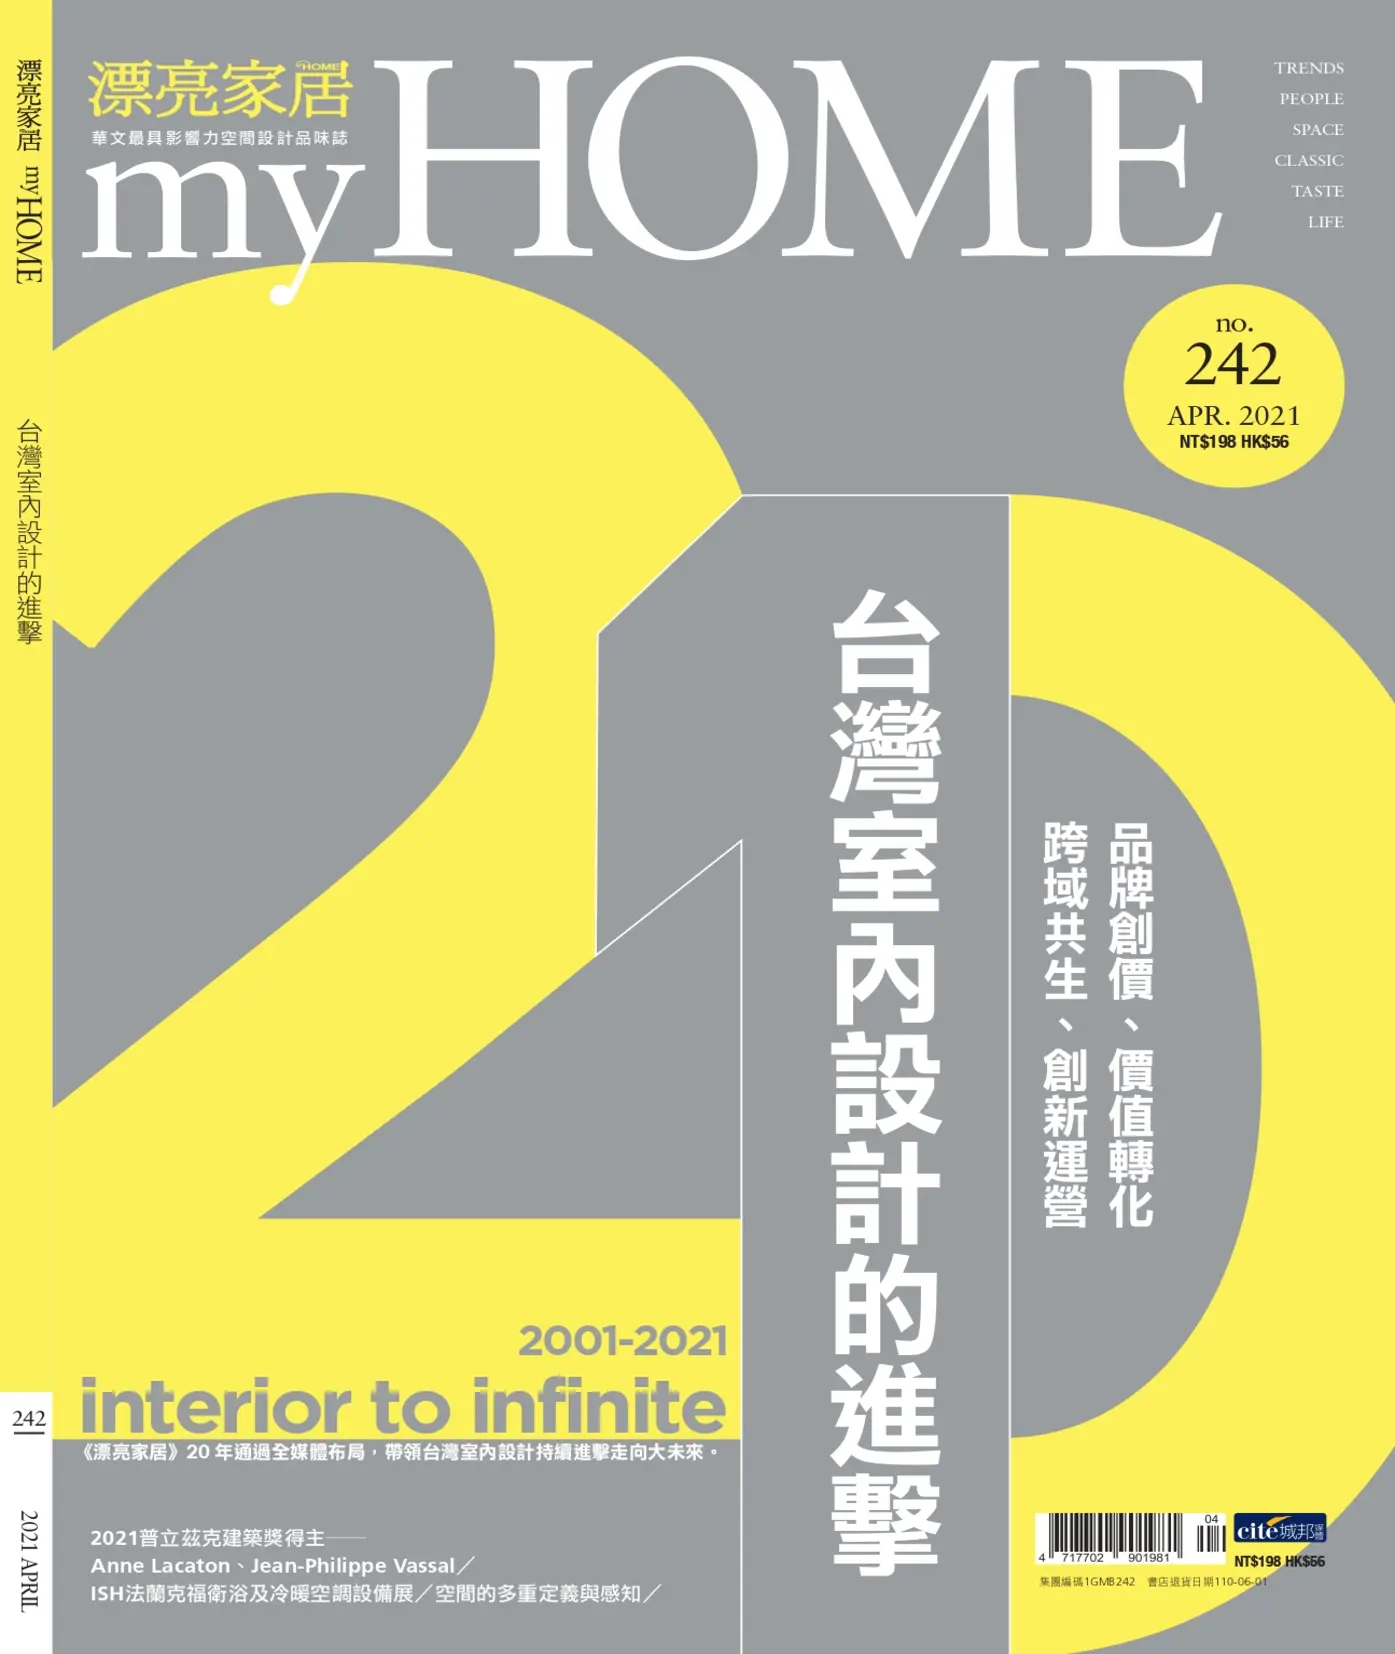 台北室內設計,台北豪宅室內設計,台北室內設計公司,台北室內設計雜誌